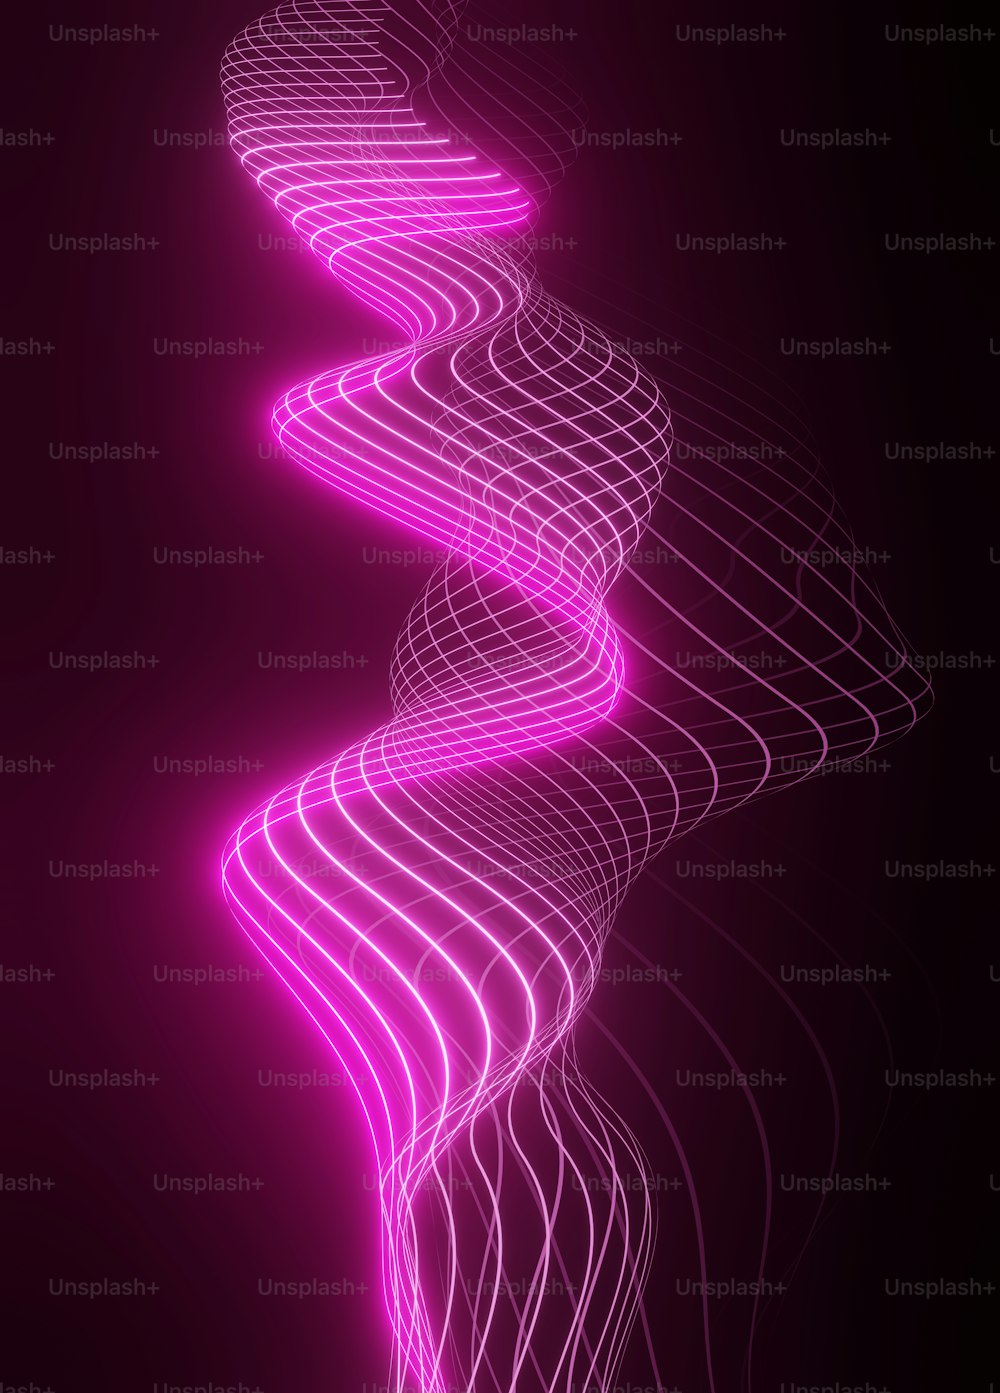 Un fond abstrait violet avec des lignes et des courbes